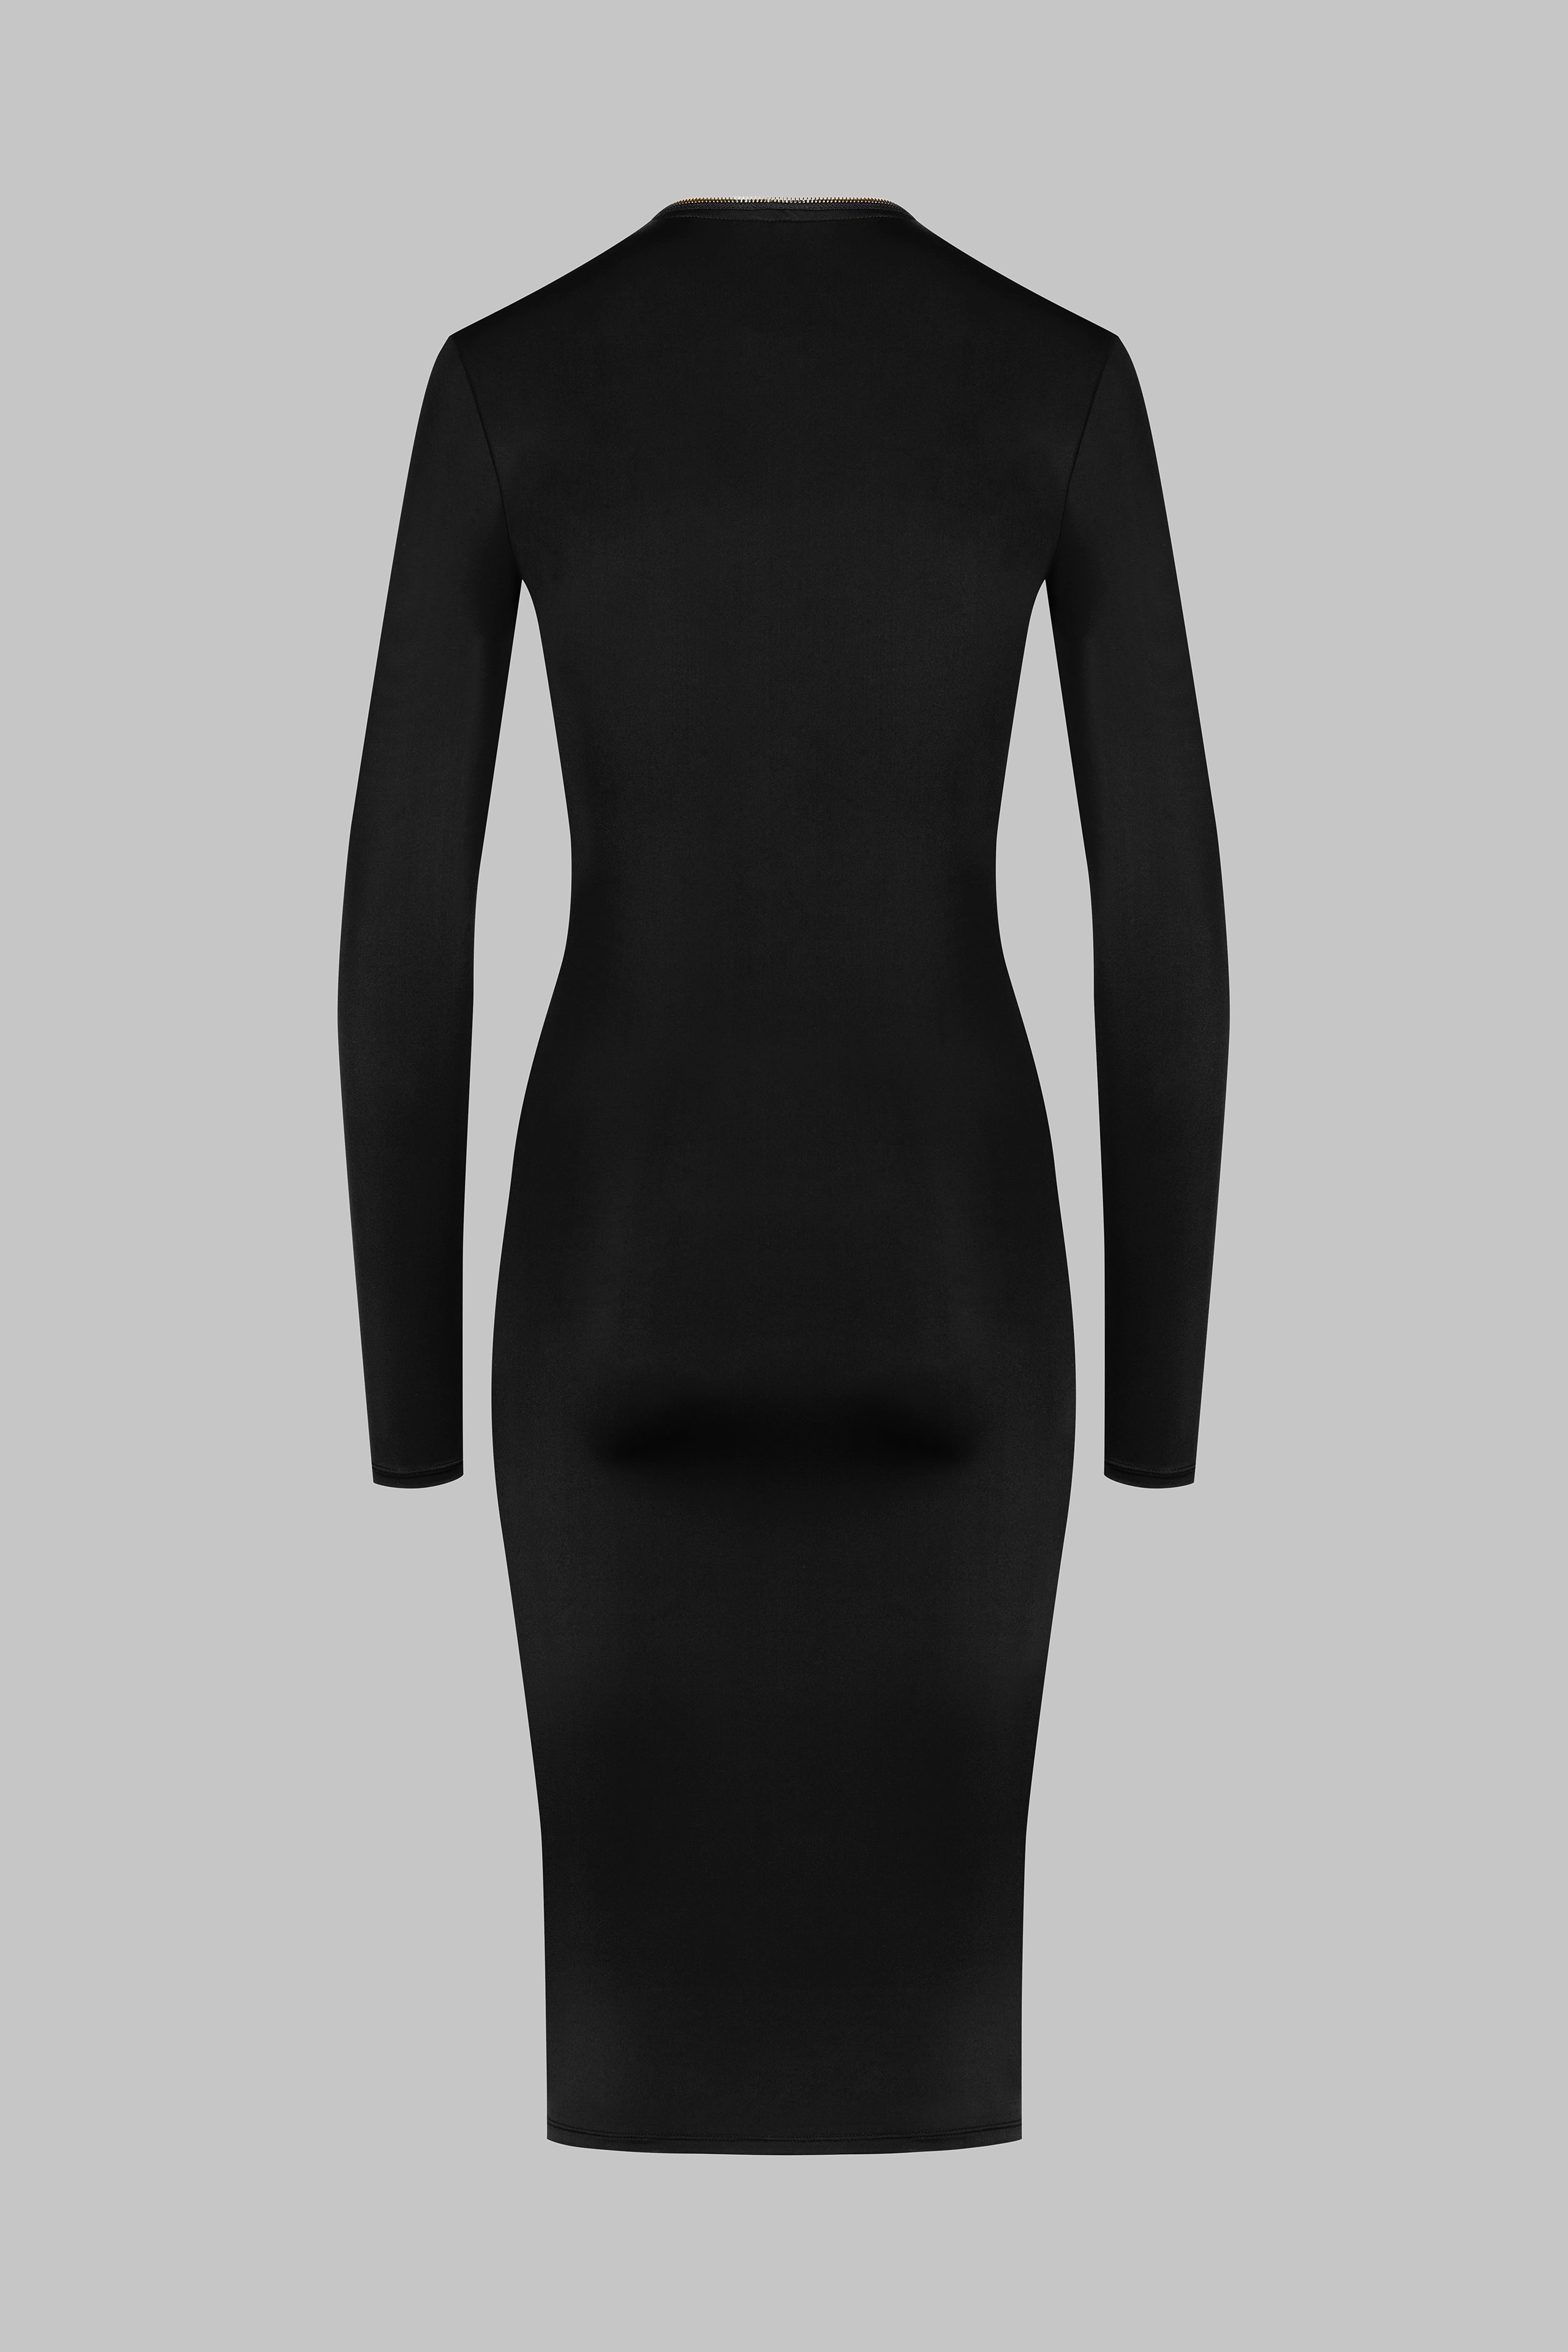 021 - Stretchiges Midi-Kleid mit Reißverschluss